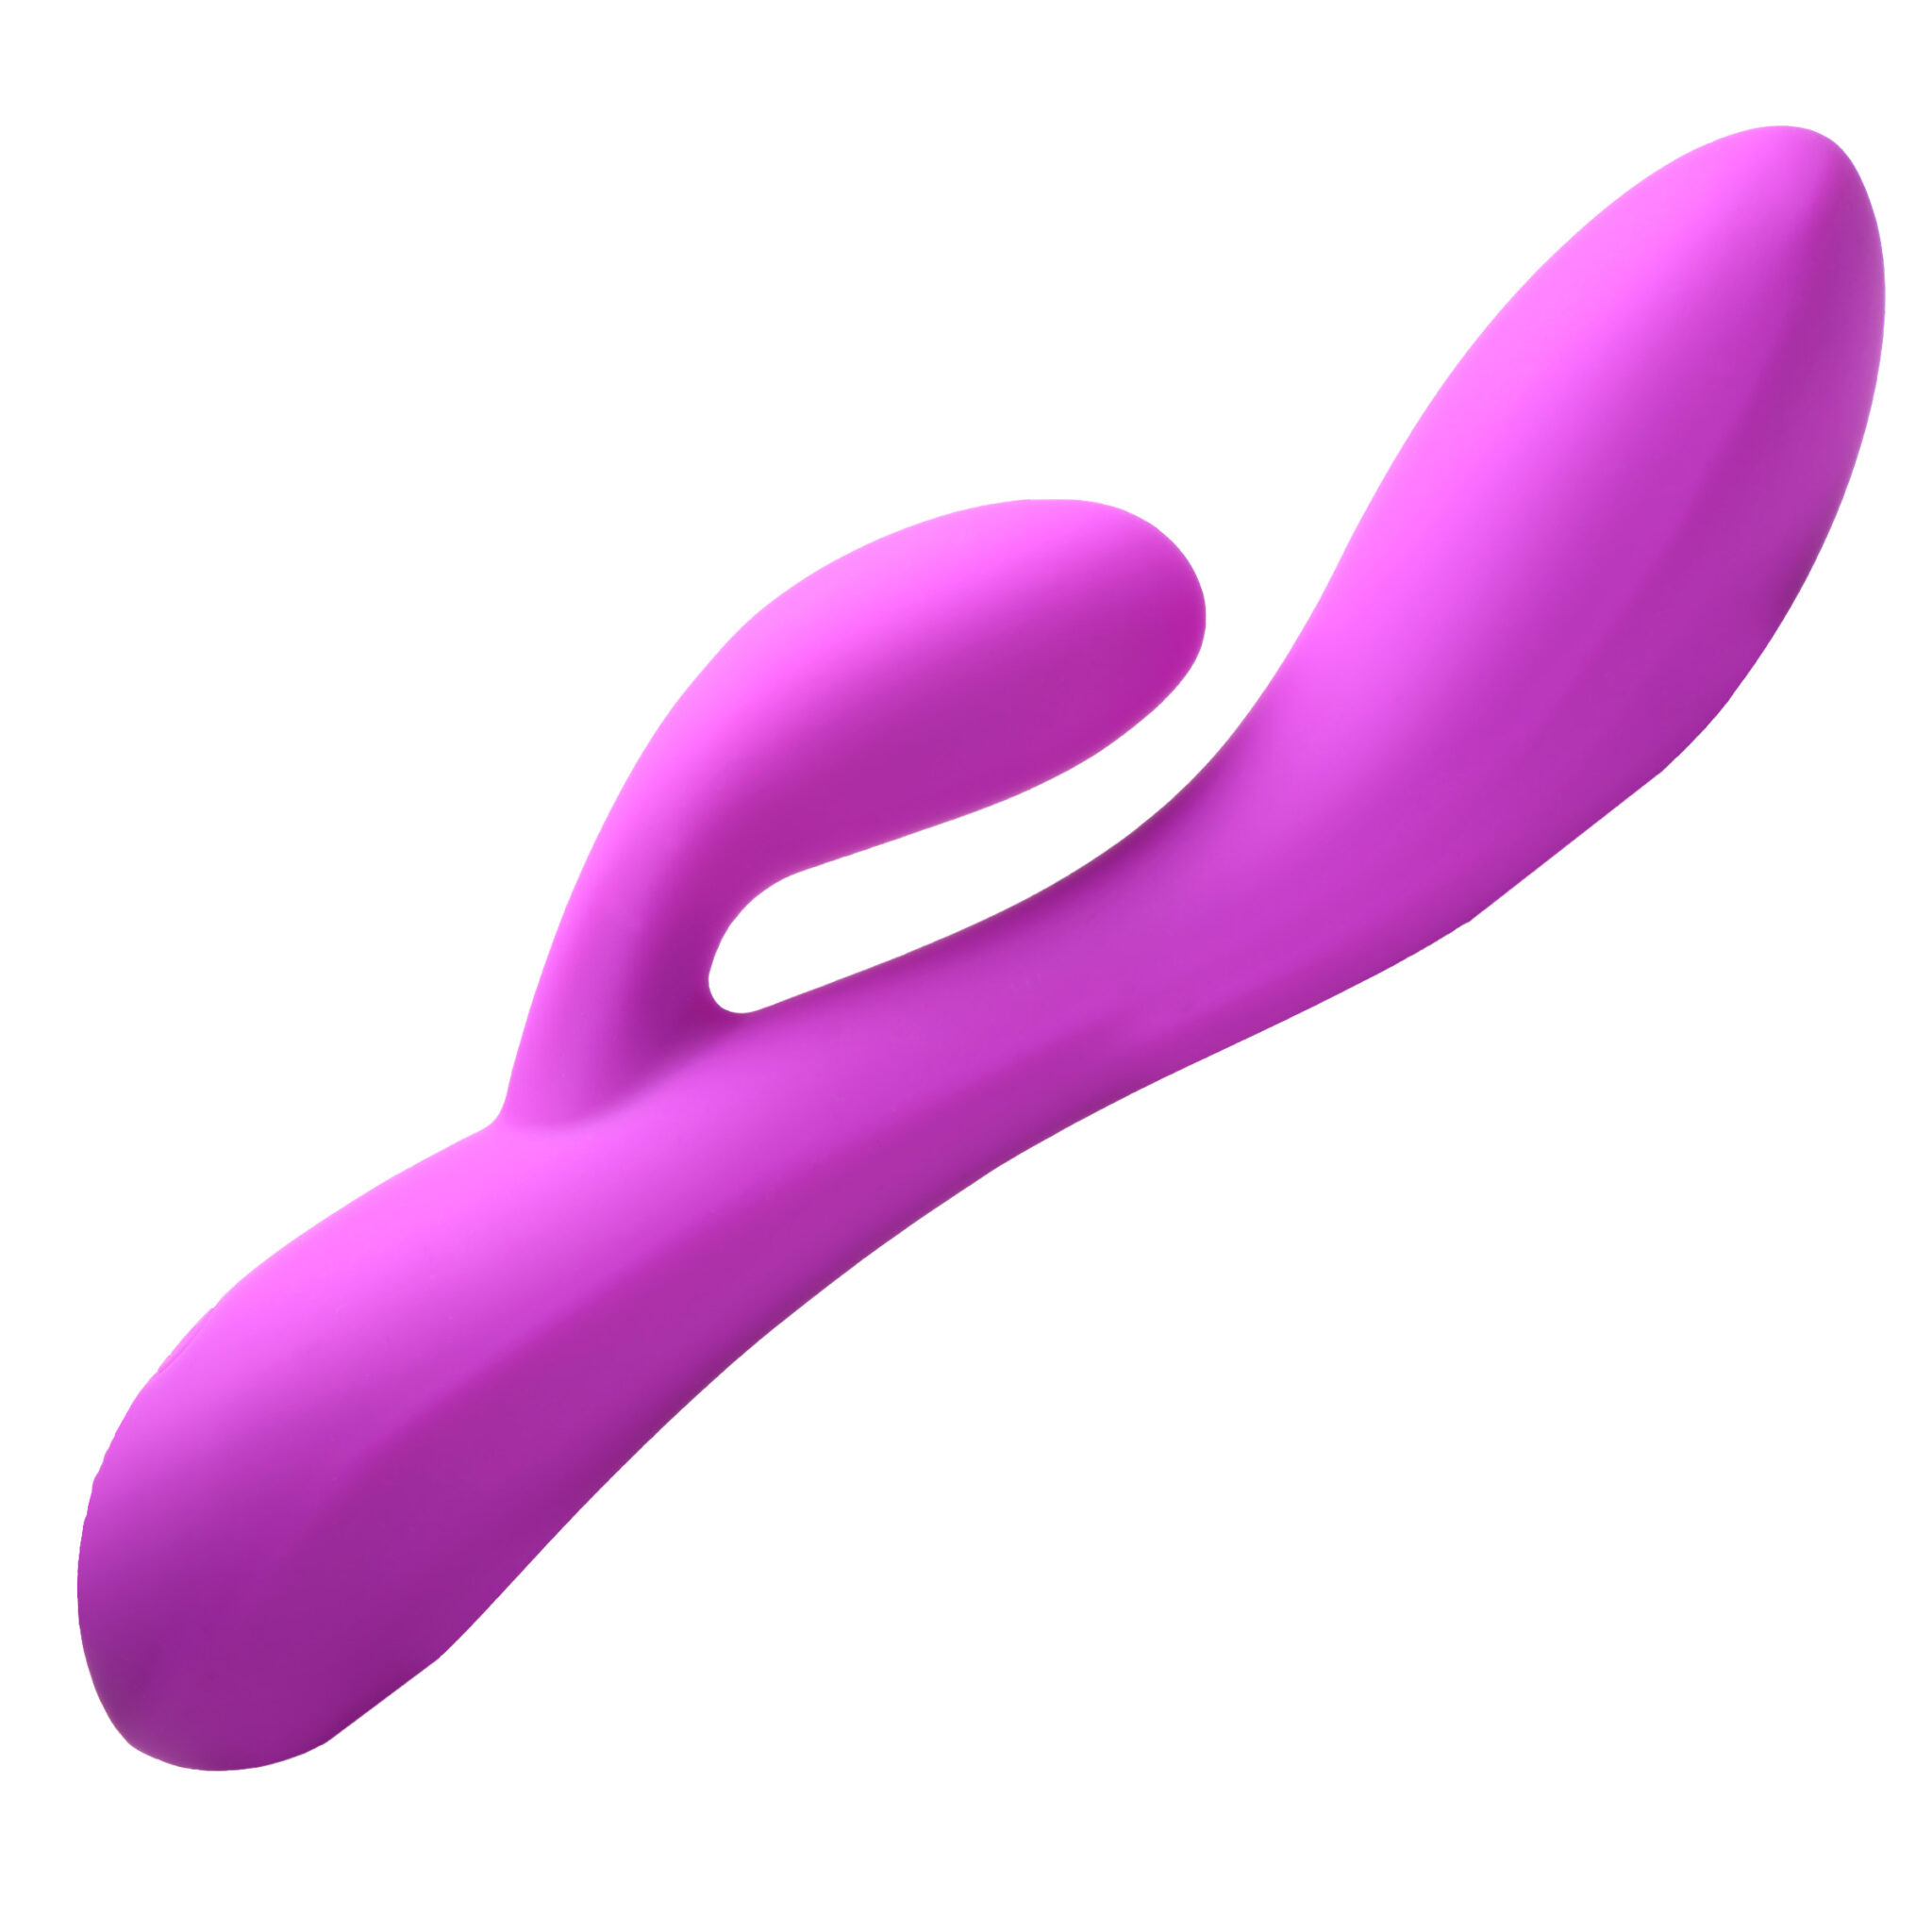 10X Flexible Silicone Rabbit Vibrator – Purple